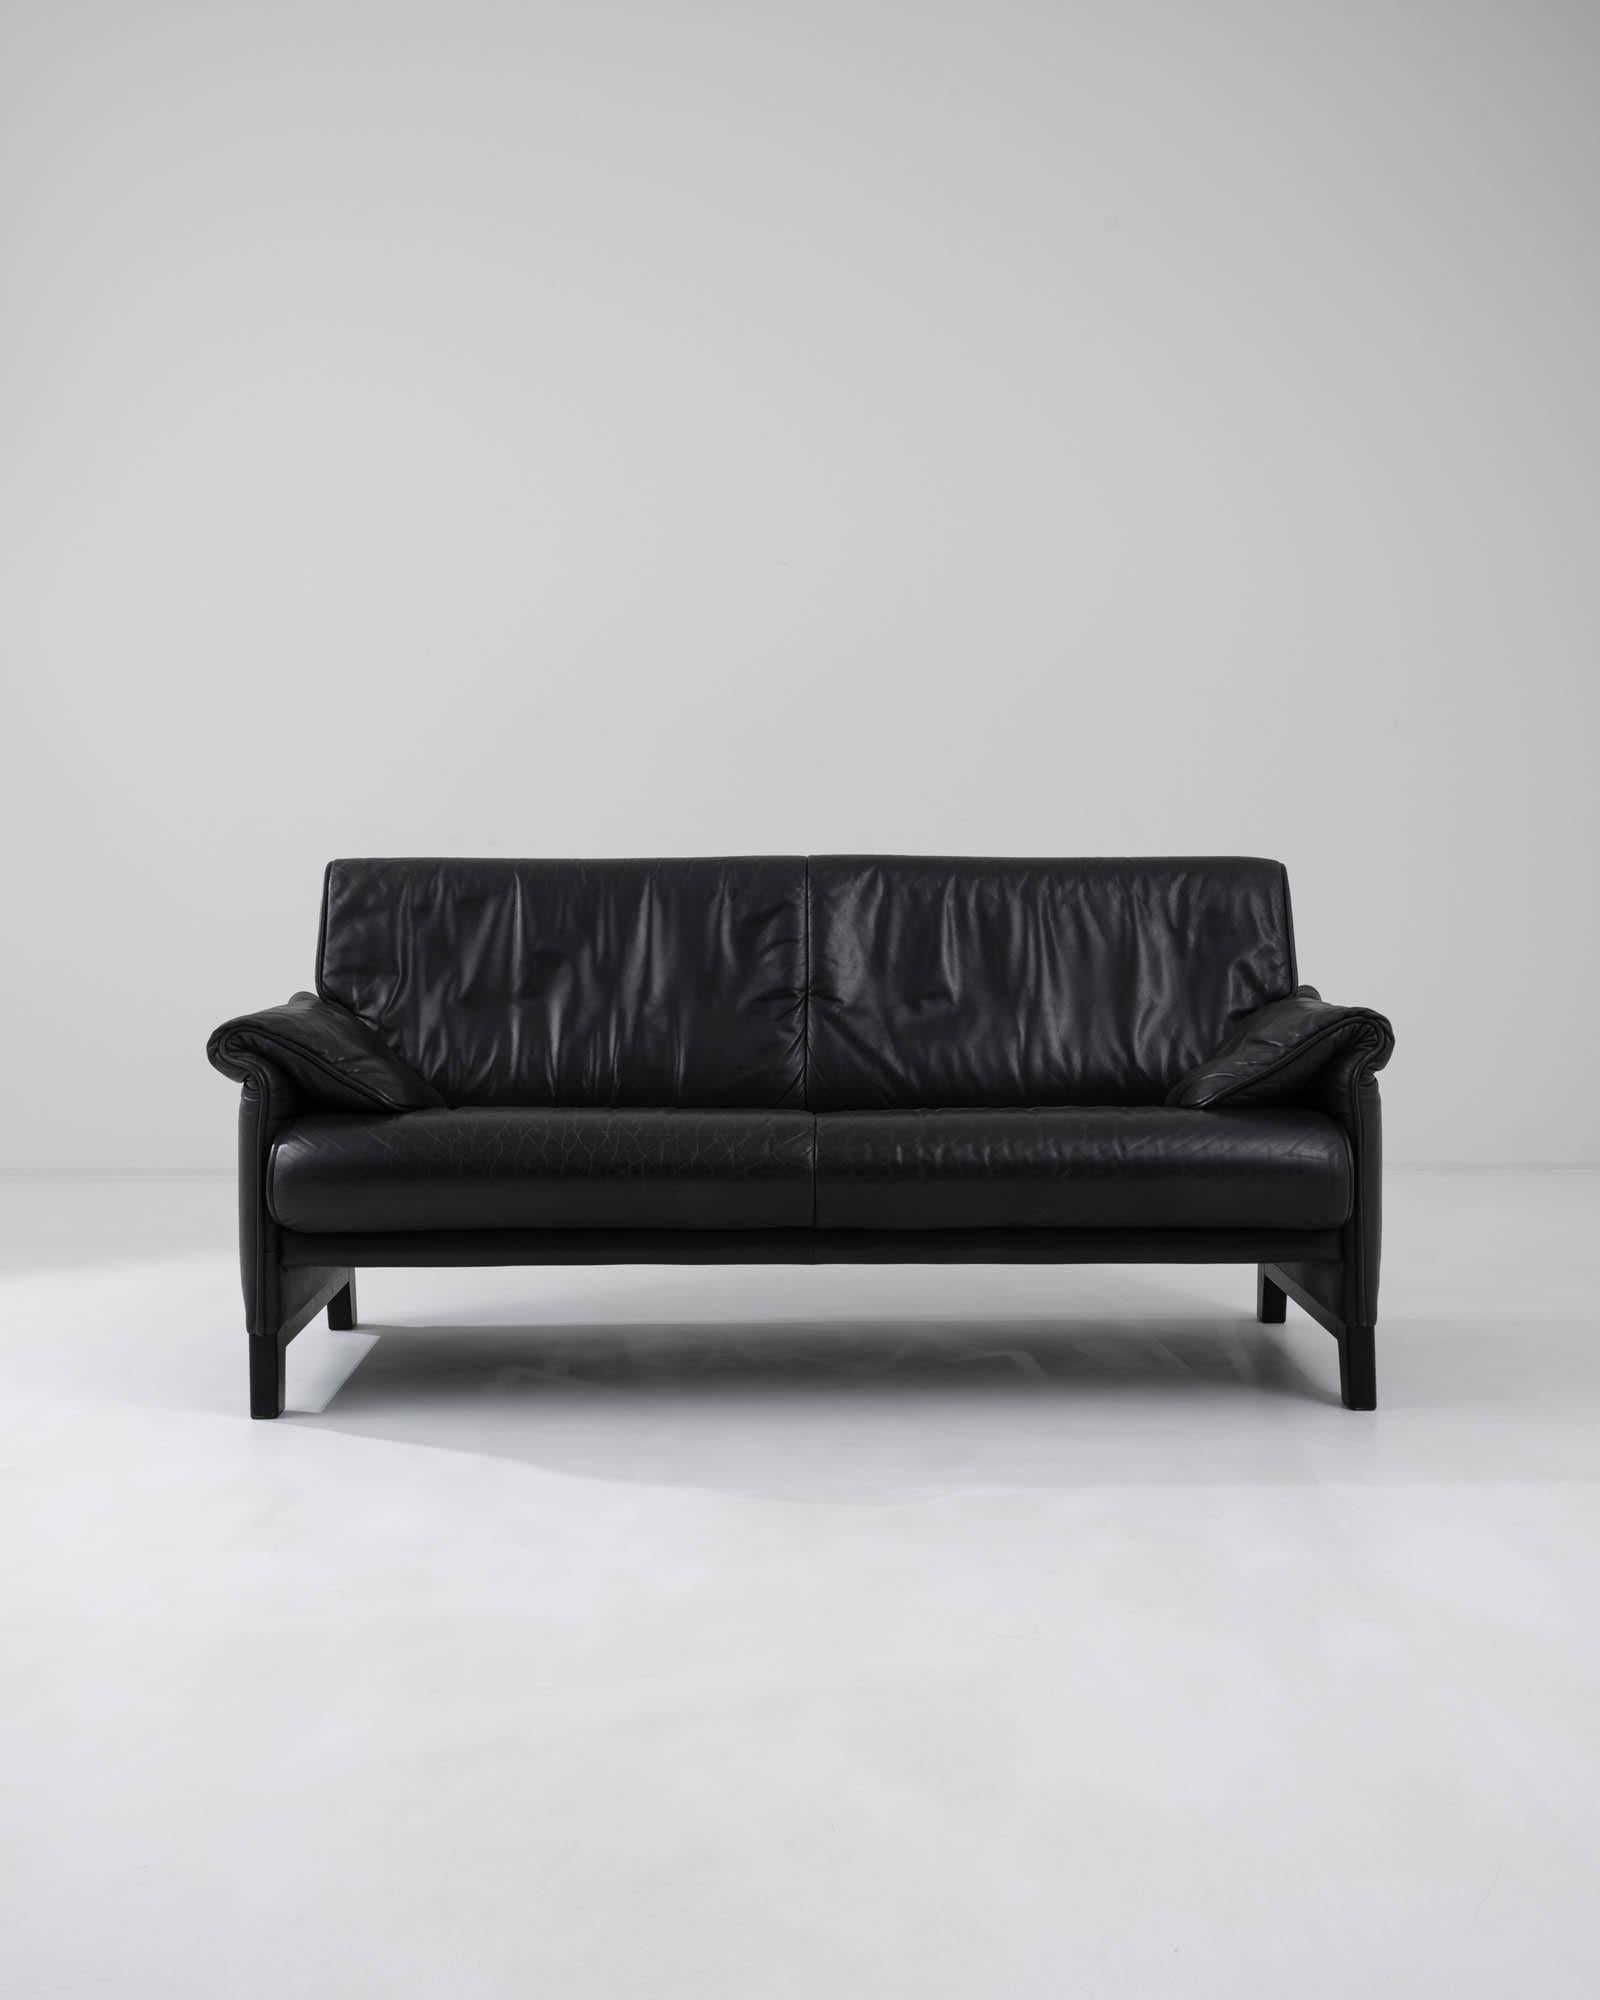 Fabriqué à la main en Suisse par le célèbre fabricant de meubles De Sede, ce canapé en cuir moderniste est à la fois sophistiqué et ludique. Les accoudoirs se dédoublent en plis souples, donnant une inflexion décontractée à une silhouette par